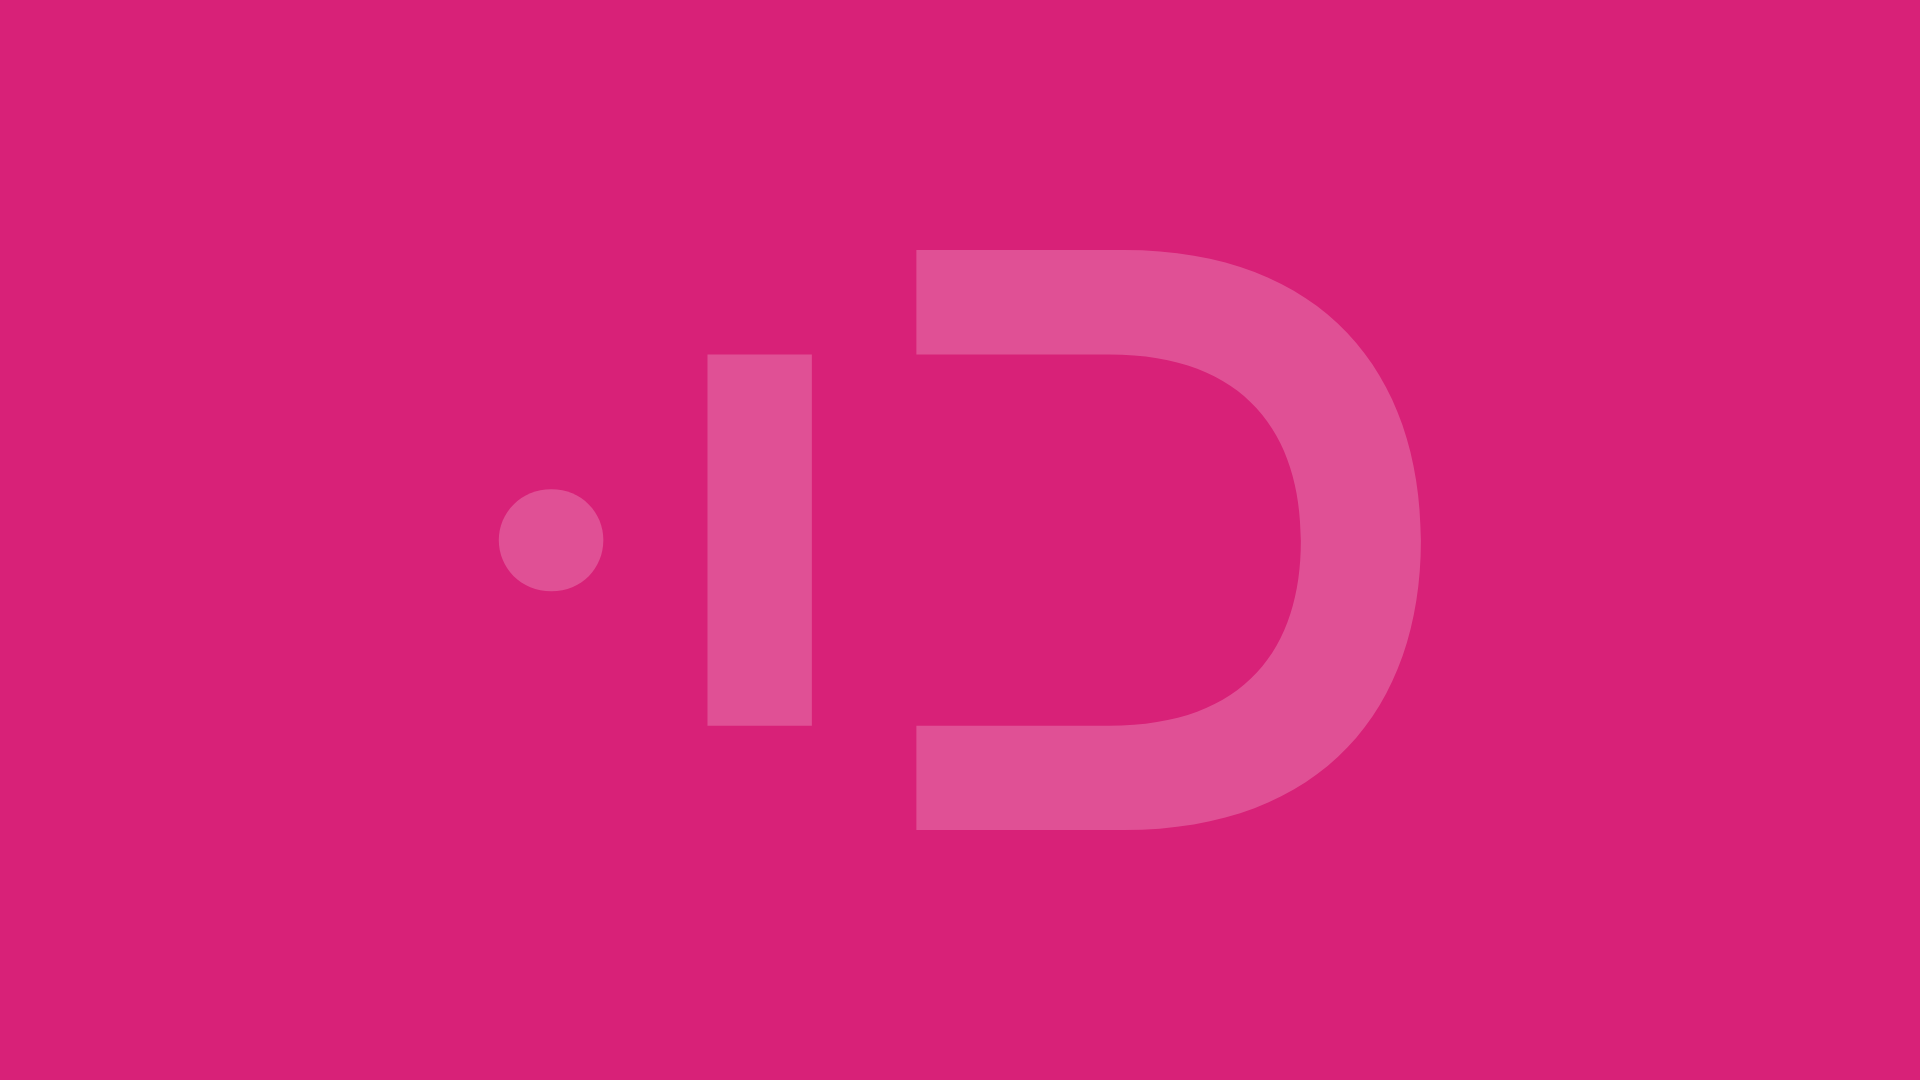 Grafika przedstawia logo Programu DSI, składające się z trzech części geometrycznych. Obok pełna nazwa projektu.